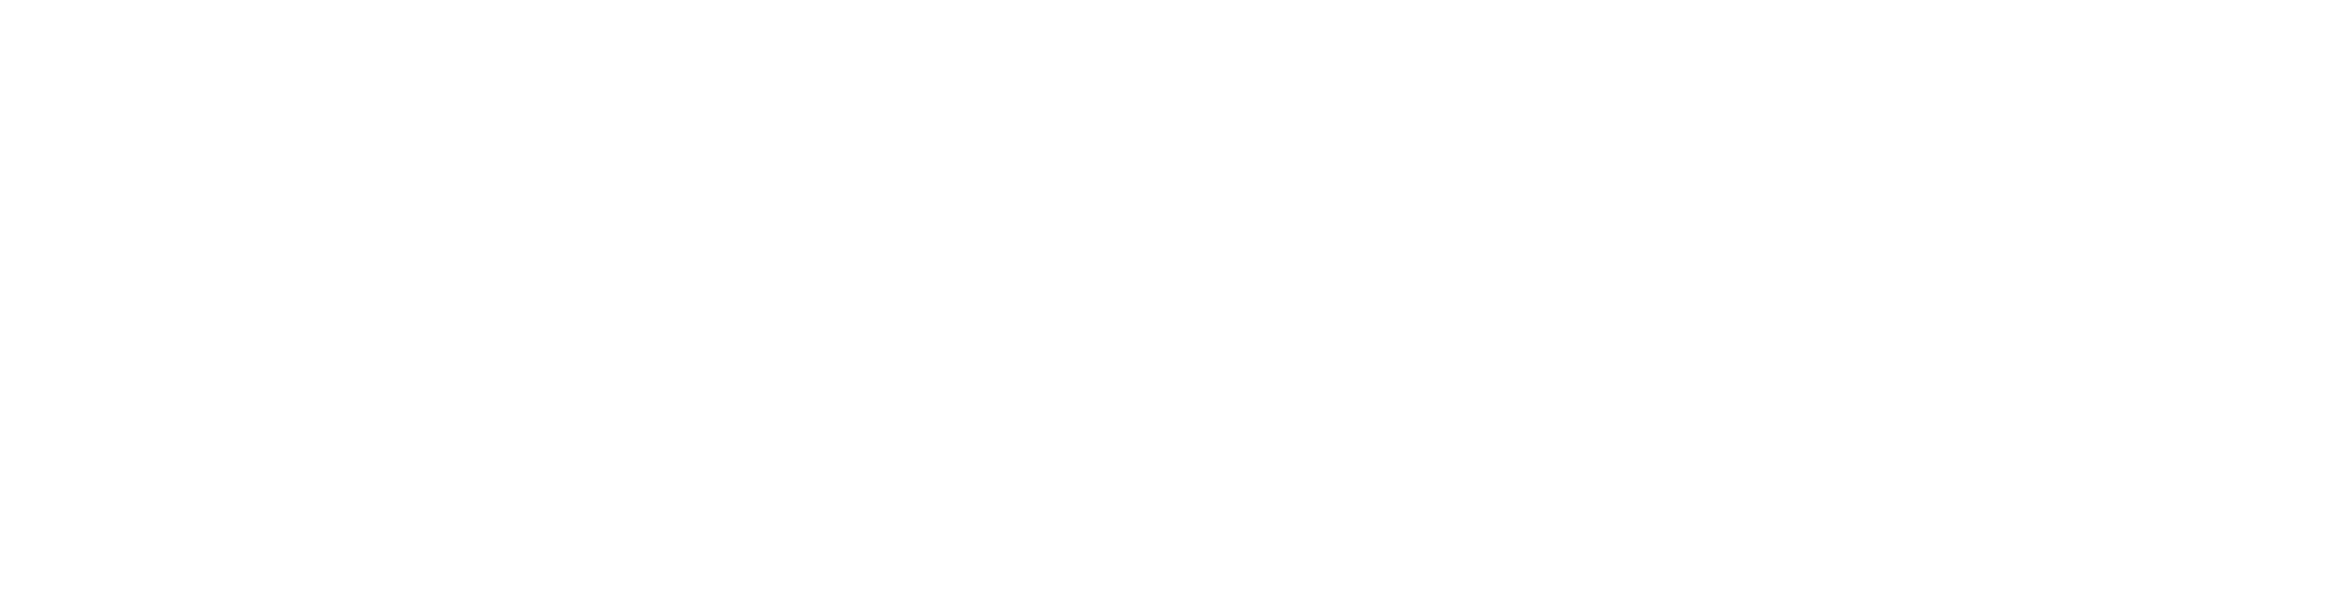 Kuglmeier Ventures Logo